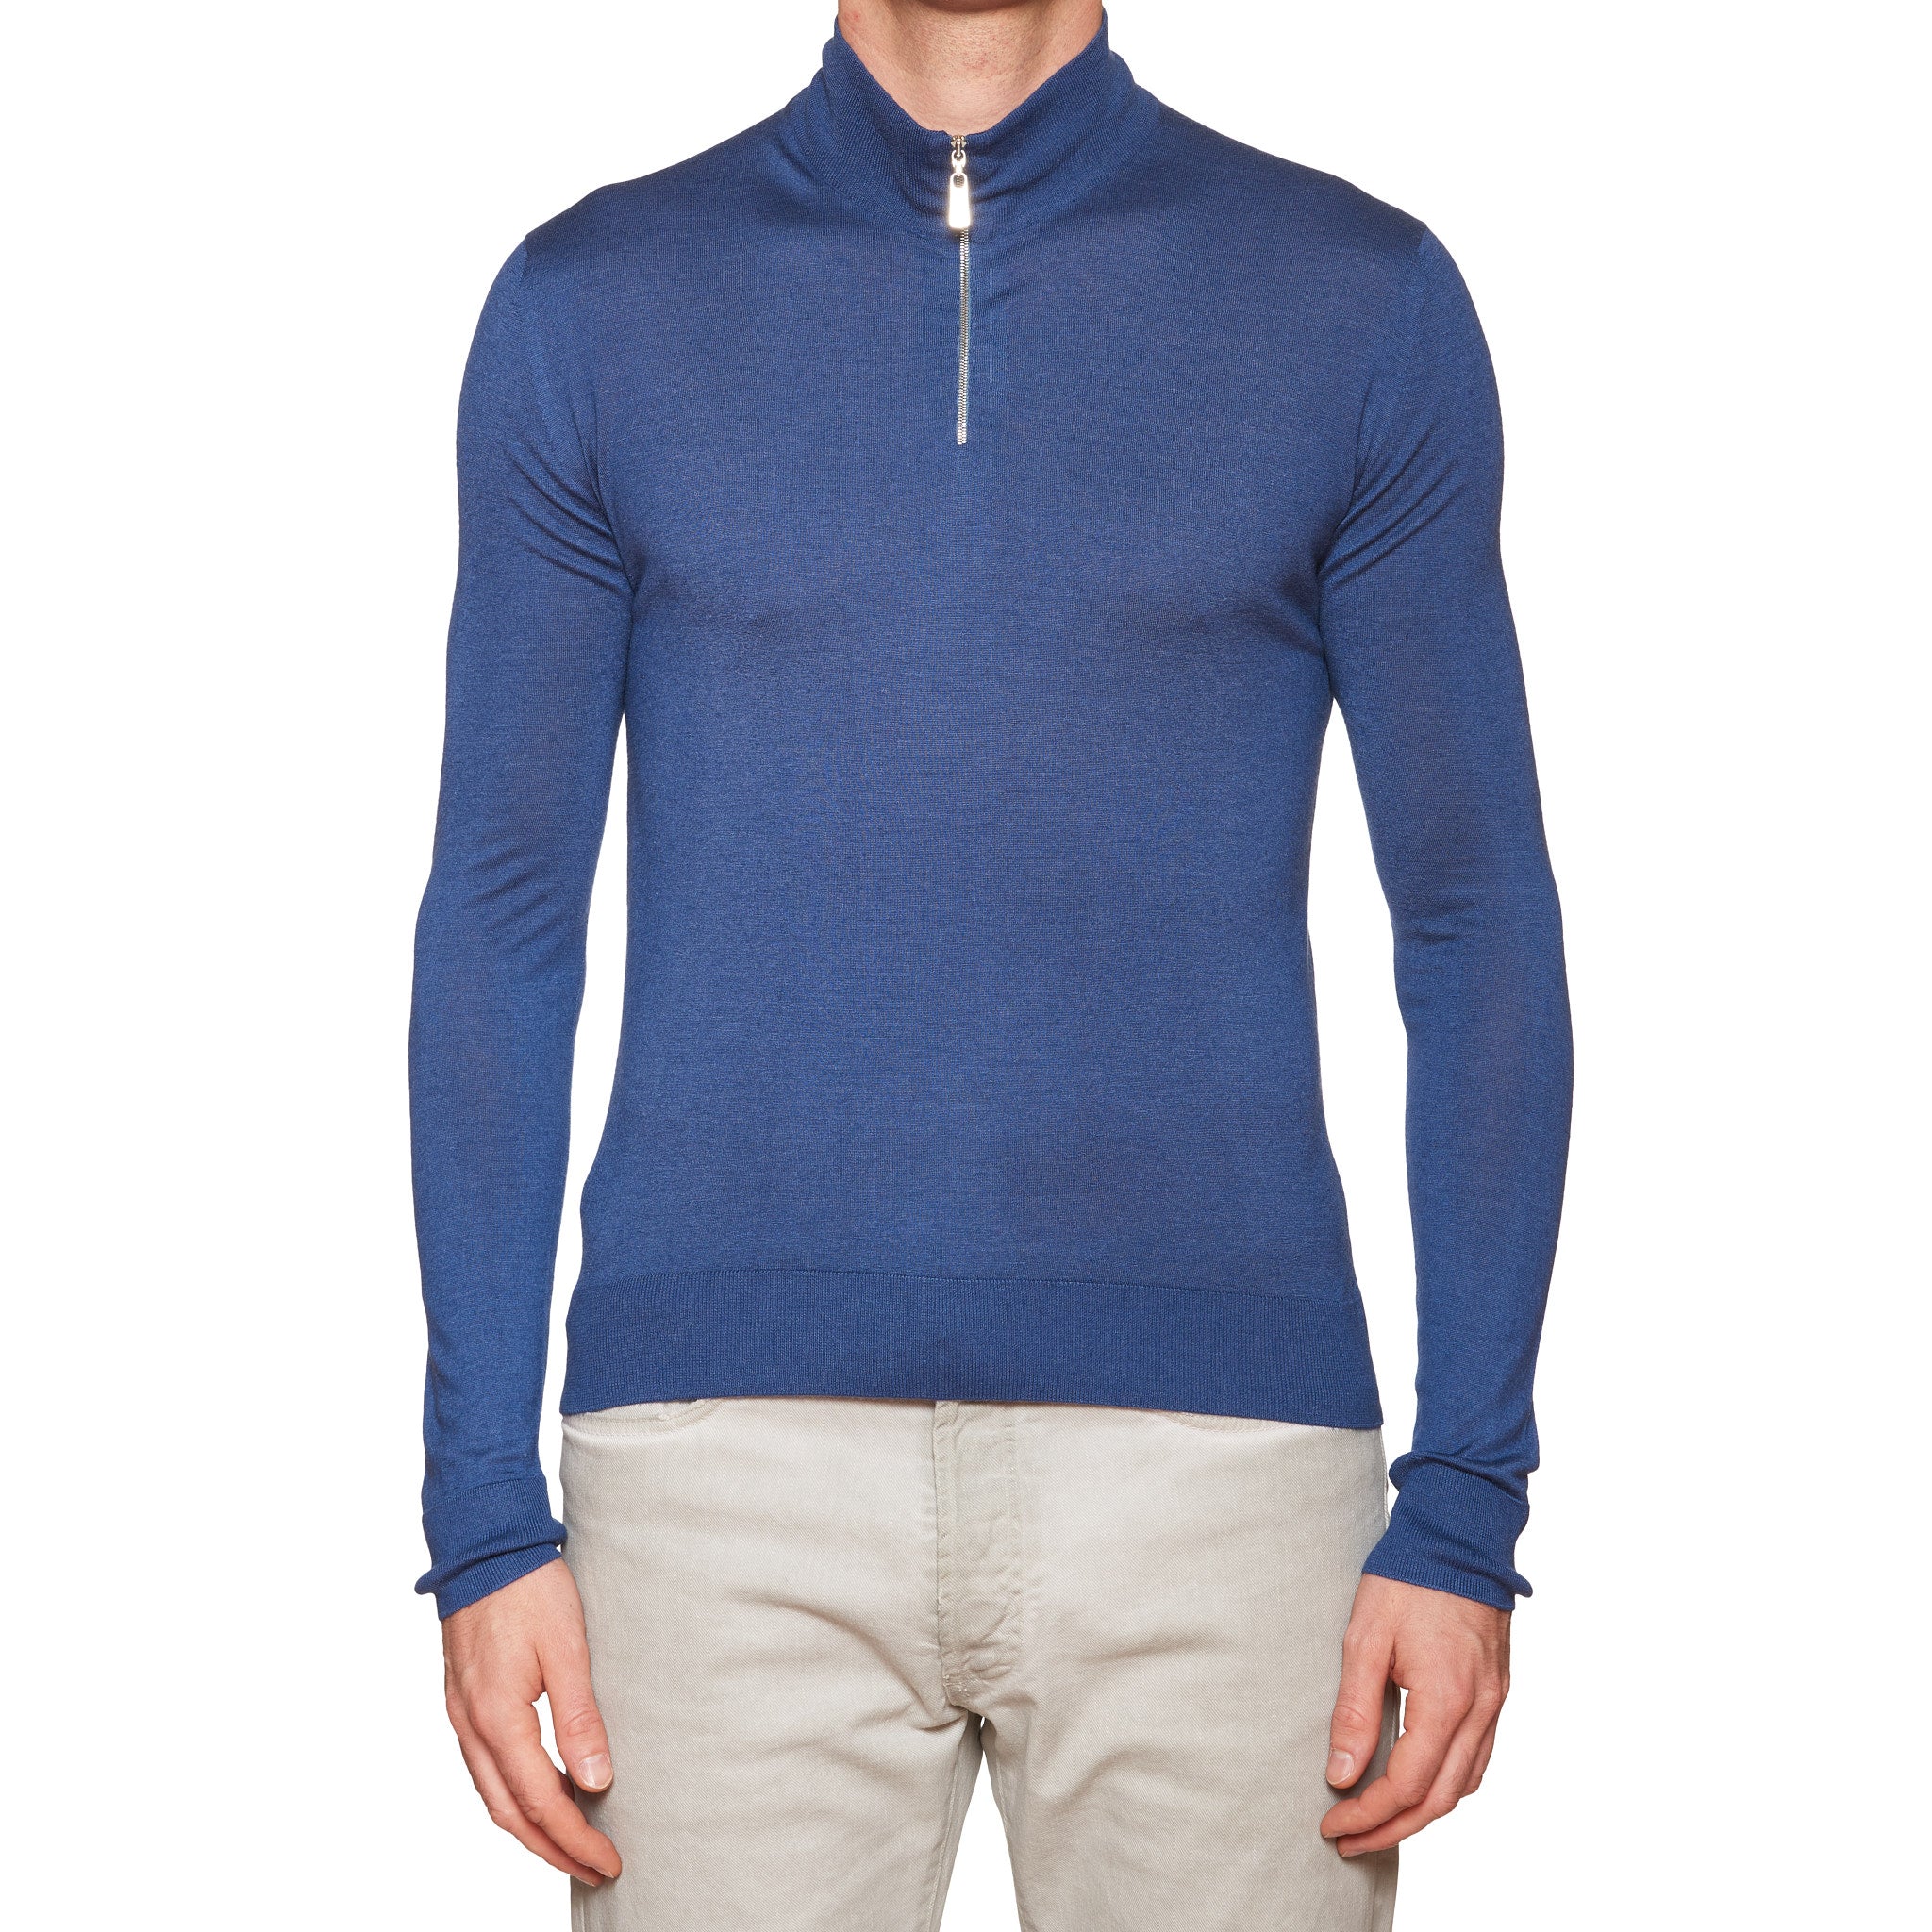 FEDELI "Millionaire" Blue 14 Micron Super Cashmere Zip Neck Sweater 46 NEW XS FEDELI